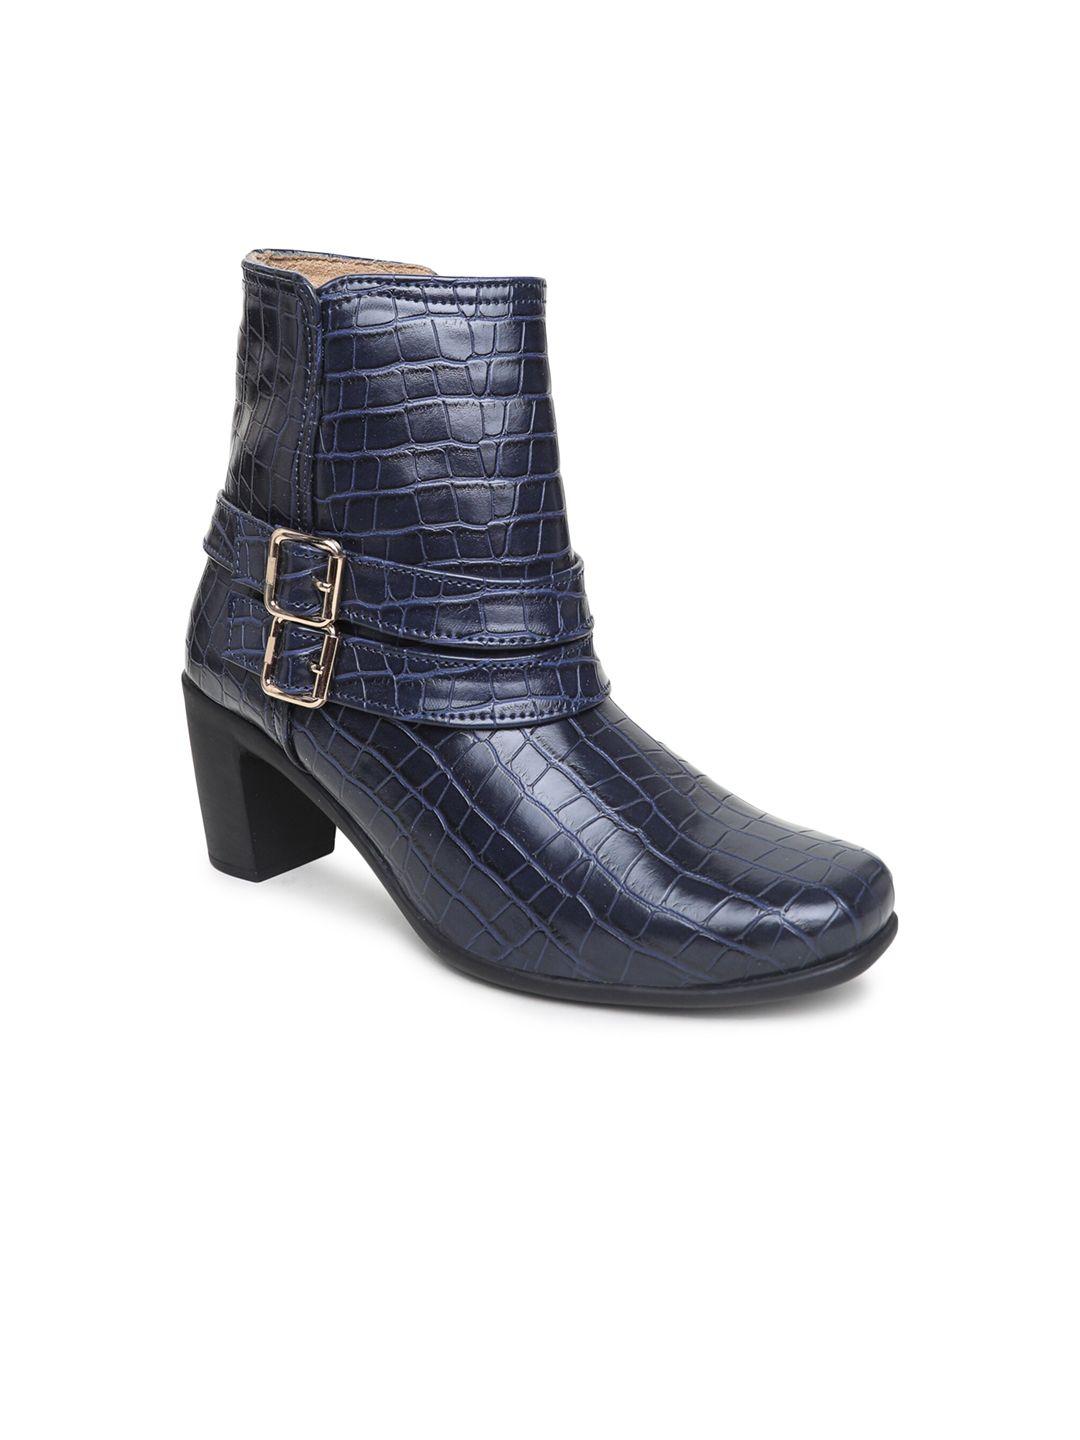 valiosaa women textured block heeled winter boots